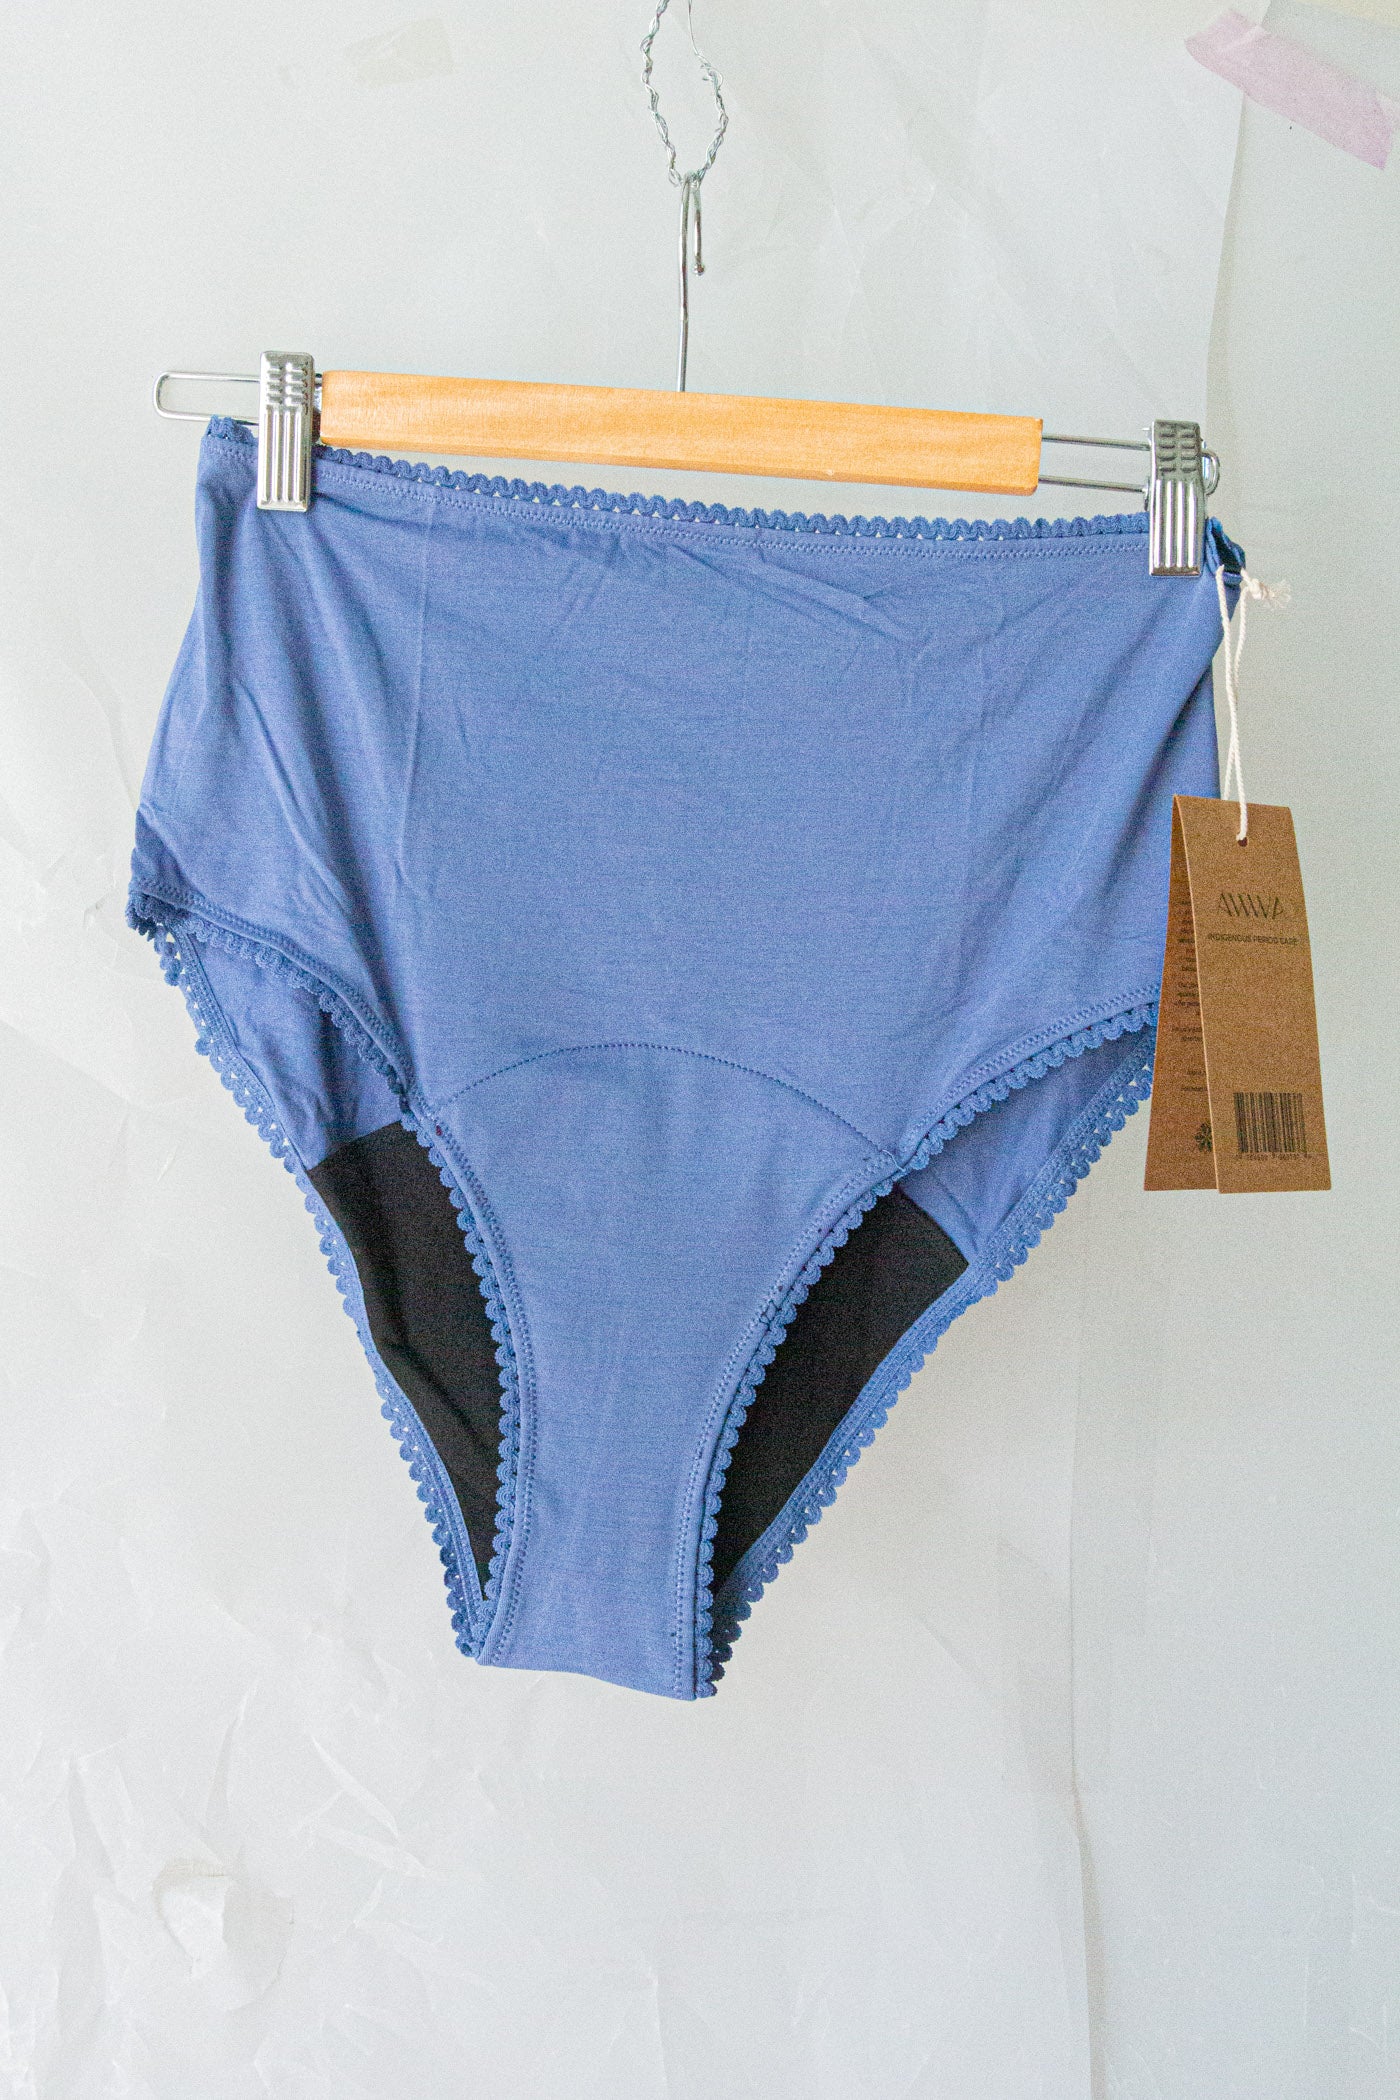 High Waisted Period Underwear - Blue